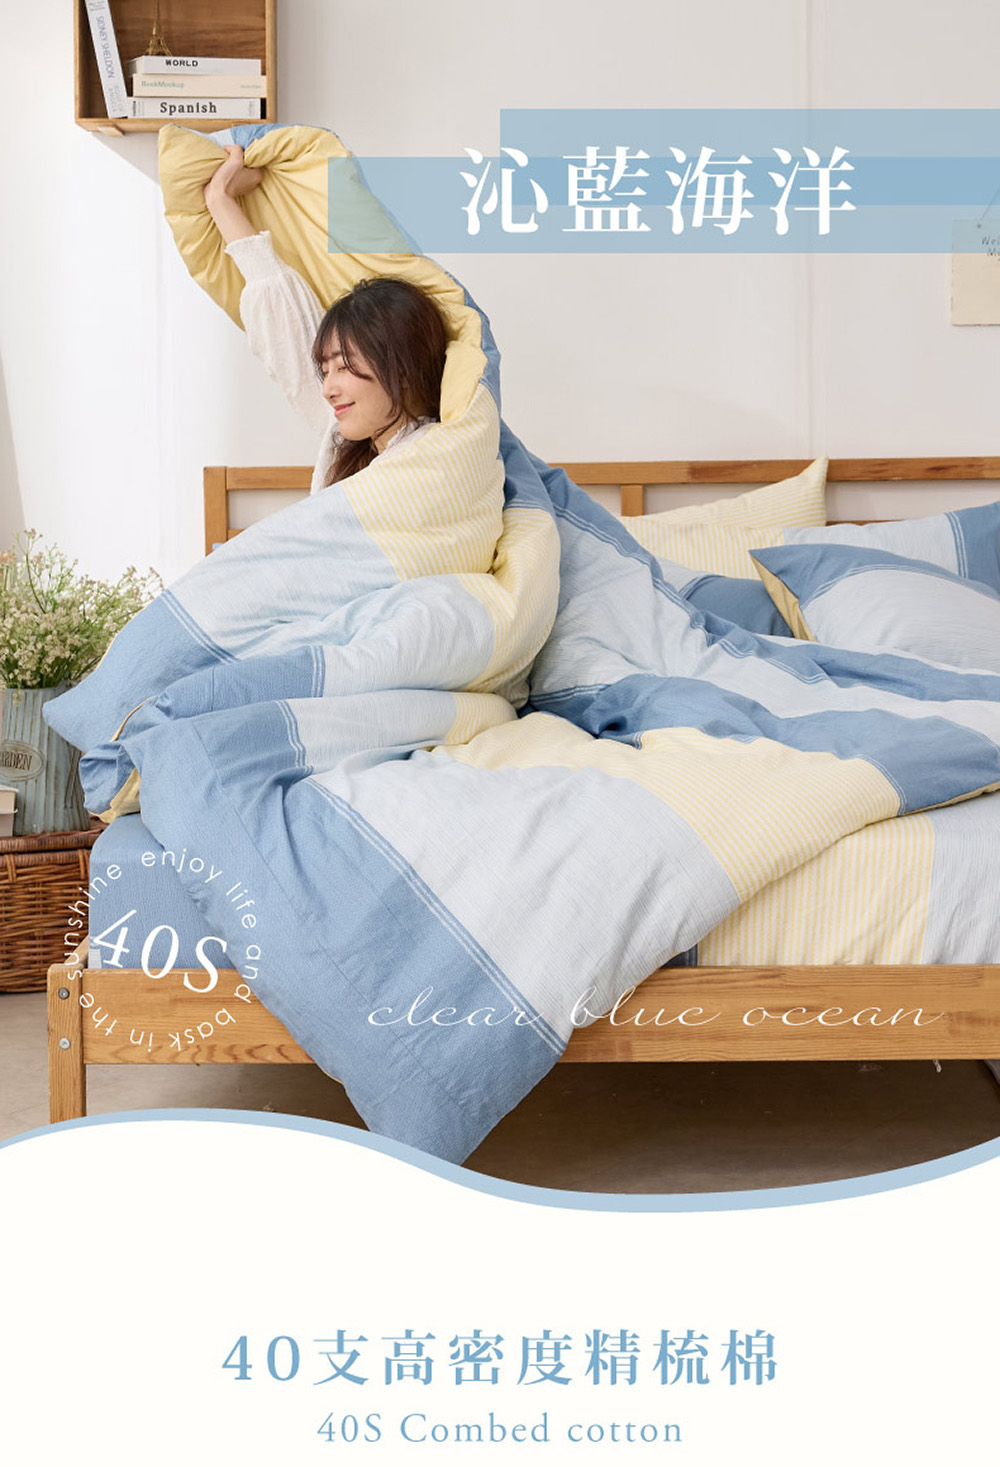 戀家小舖 100%精梳棉枕套兩用被床包四件組-雙人(沁藍海洋